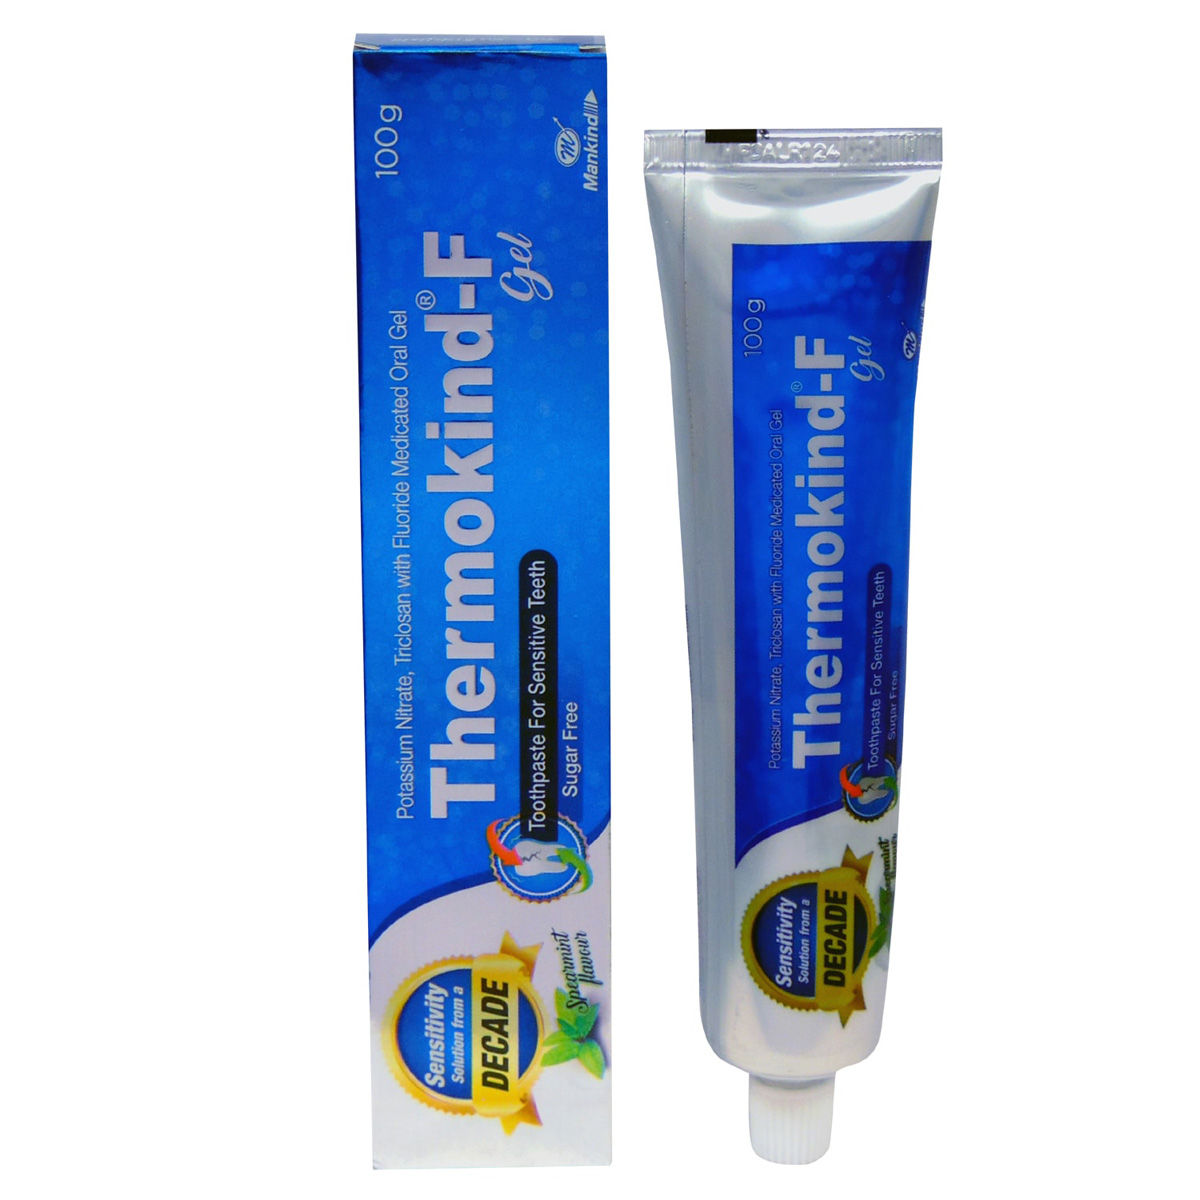 Thermokind F Dental Gel 100 gm, Pack of 1 TOOTHPASTE GEL